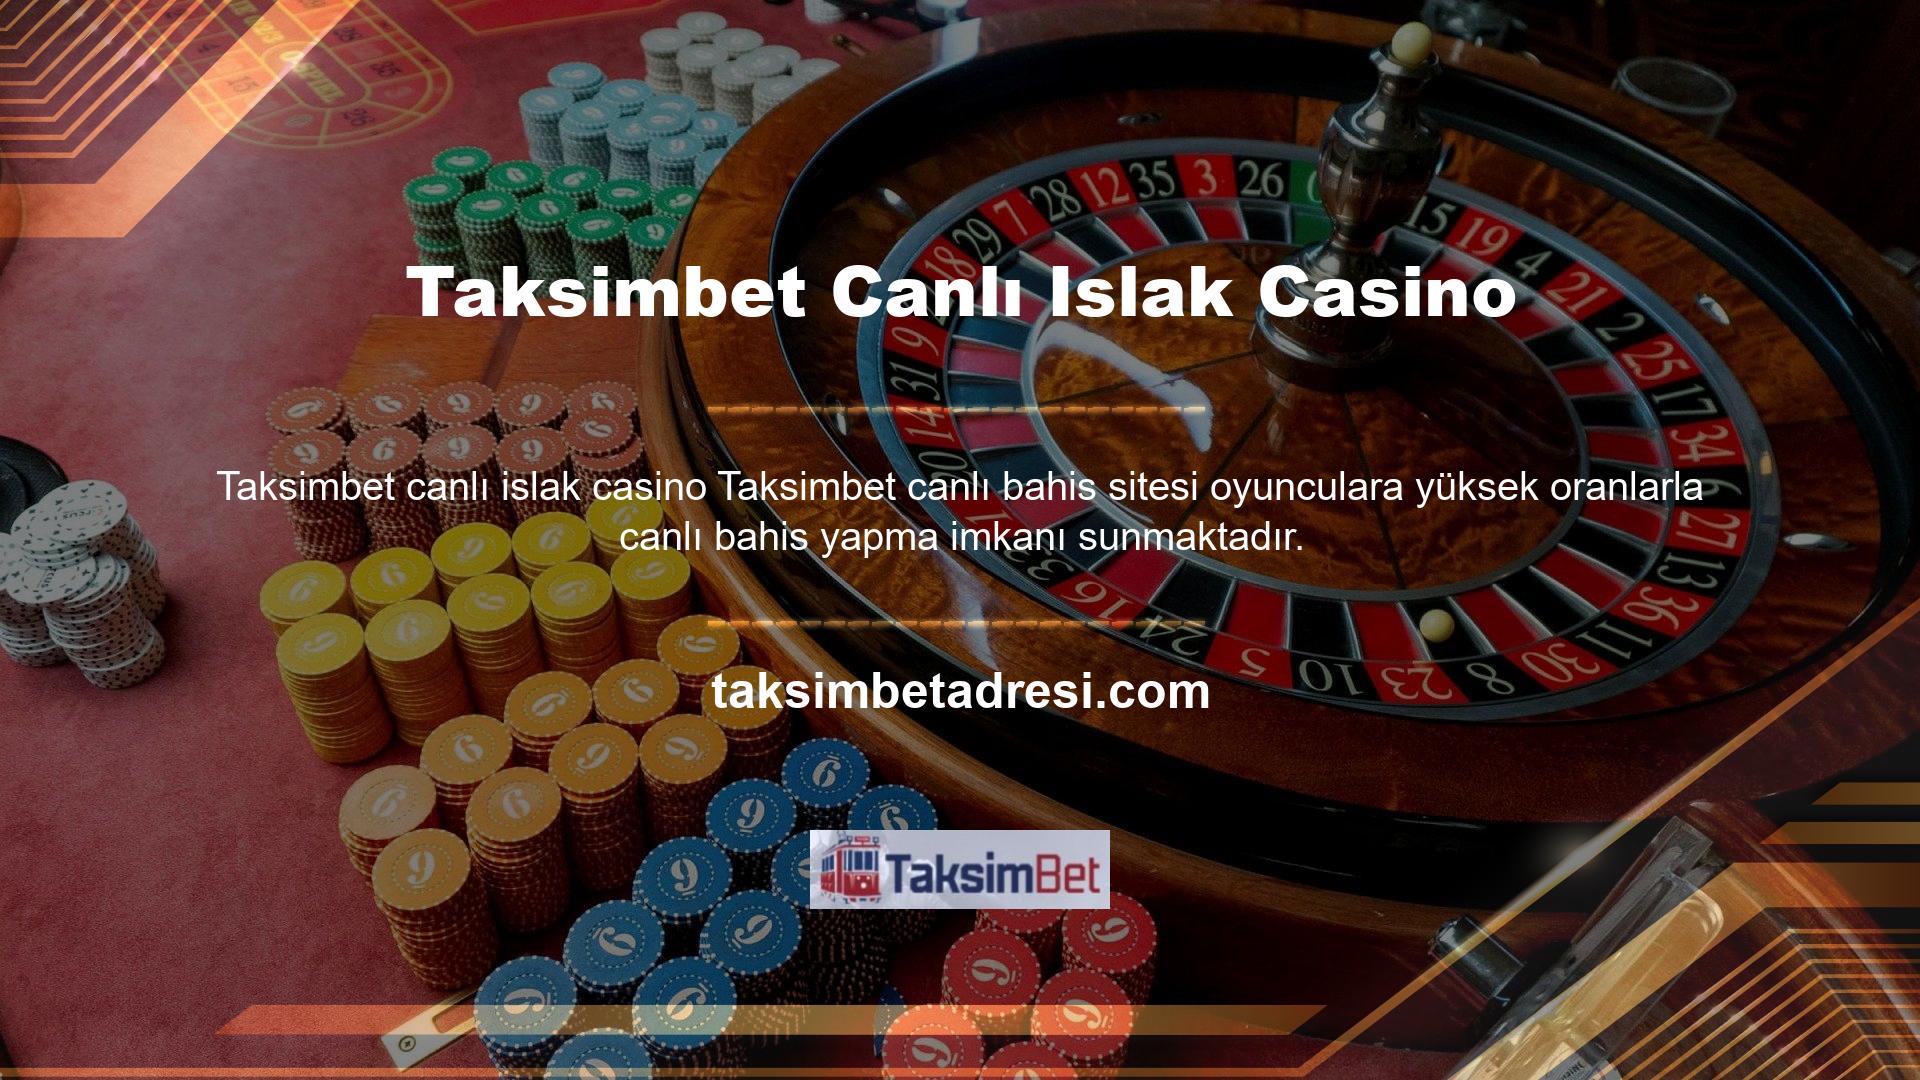 Son yıllarda giderek popüler hale gelen sanal bahis seçeneklerine de en iyi sanal bahis oranlarının sunulduğu Taksimbet Canlı Casino web sitesi üzerinden ulaşabilirsiniz